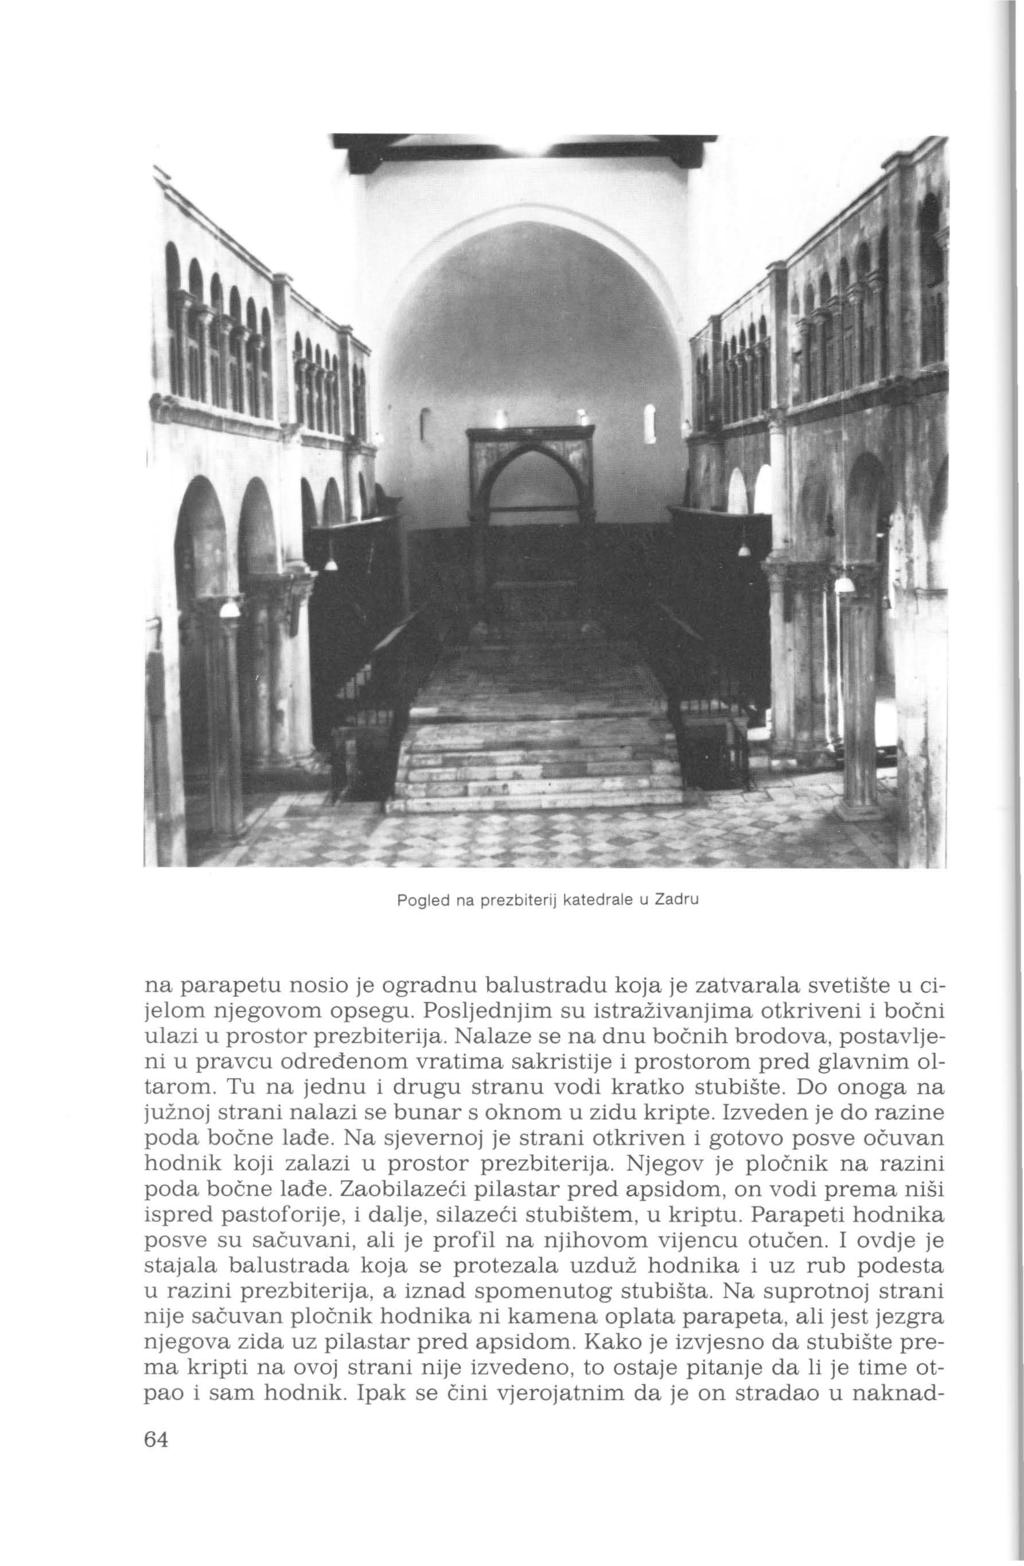 Pgled na prezbiterij katedrale u Zadru na parapetu nsi je gradnu balustradu kja je zatvarala svetište u cijelm njegvm psegu. Psljednjim su istraživanjima tkriveni i bčni ulazi u prstr prezbiterija.